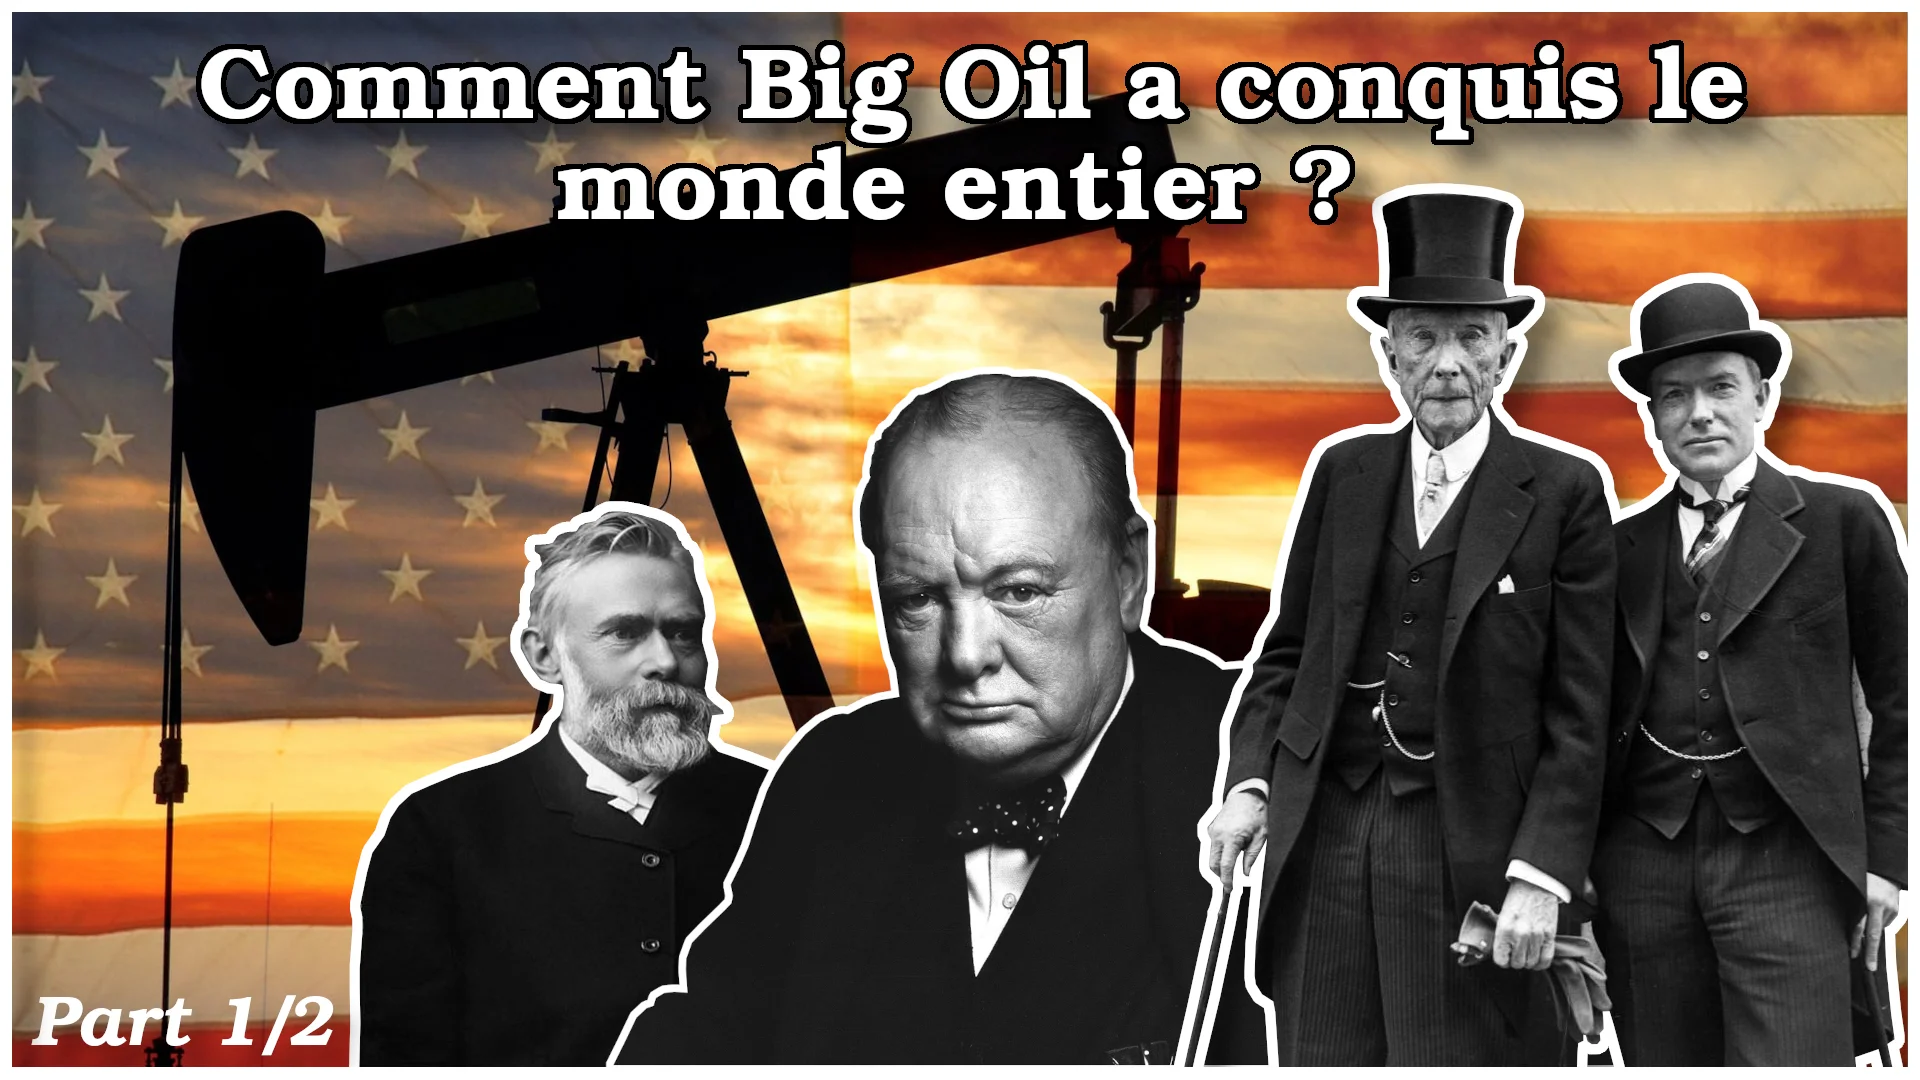 Comment Big Oil a conquis le monde entier ? Part 1/2